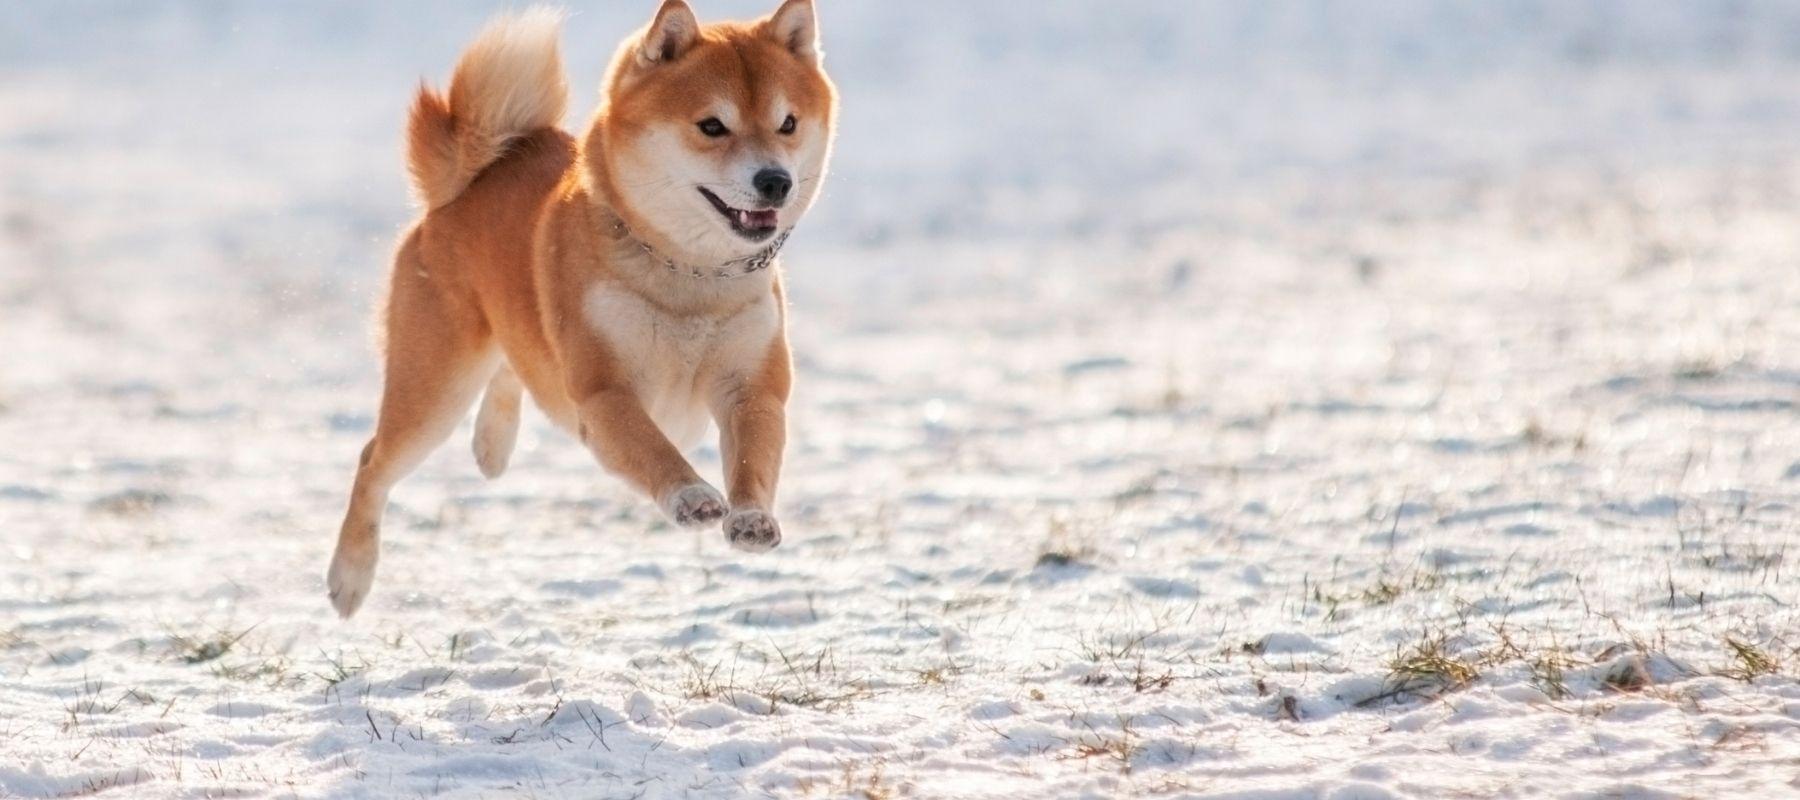 Running Shiba Inu Dog 